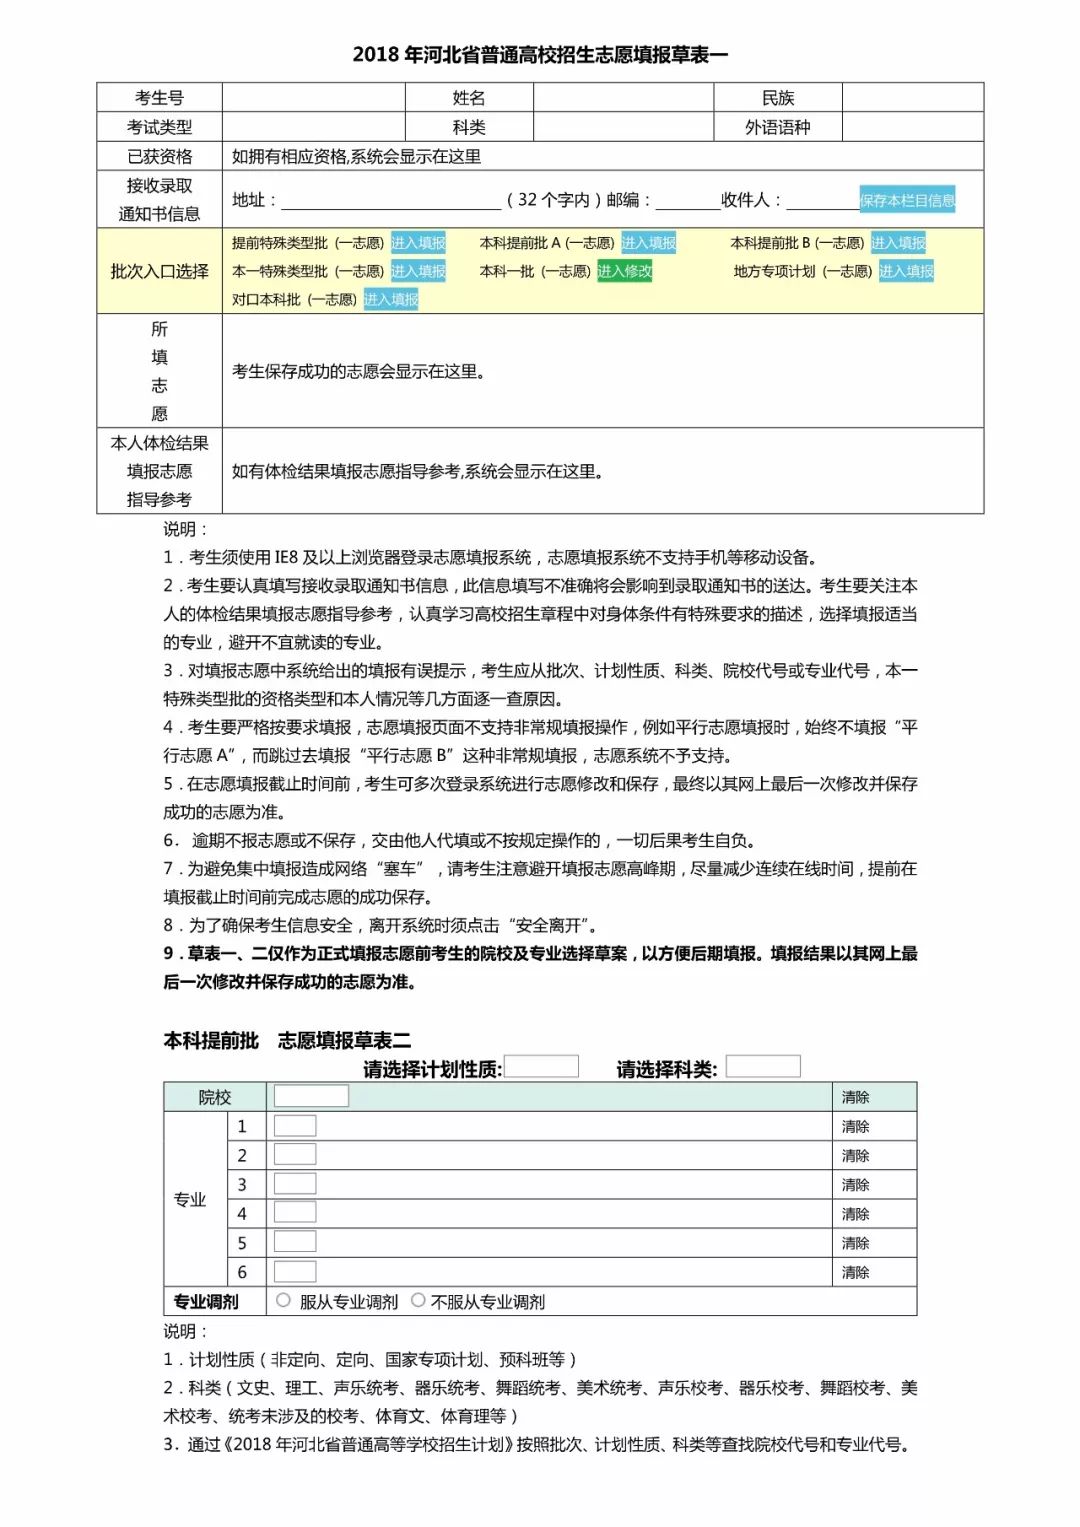 关注┃2018年河北省高考志愿填报流程演示